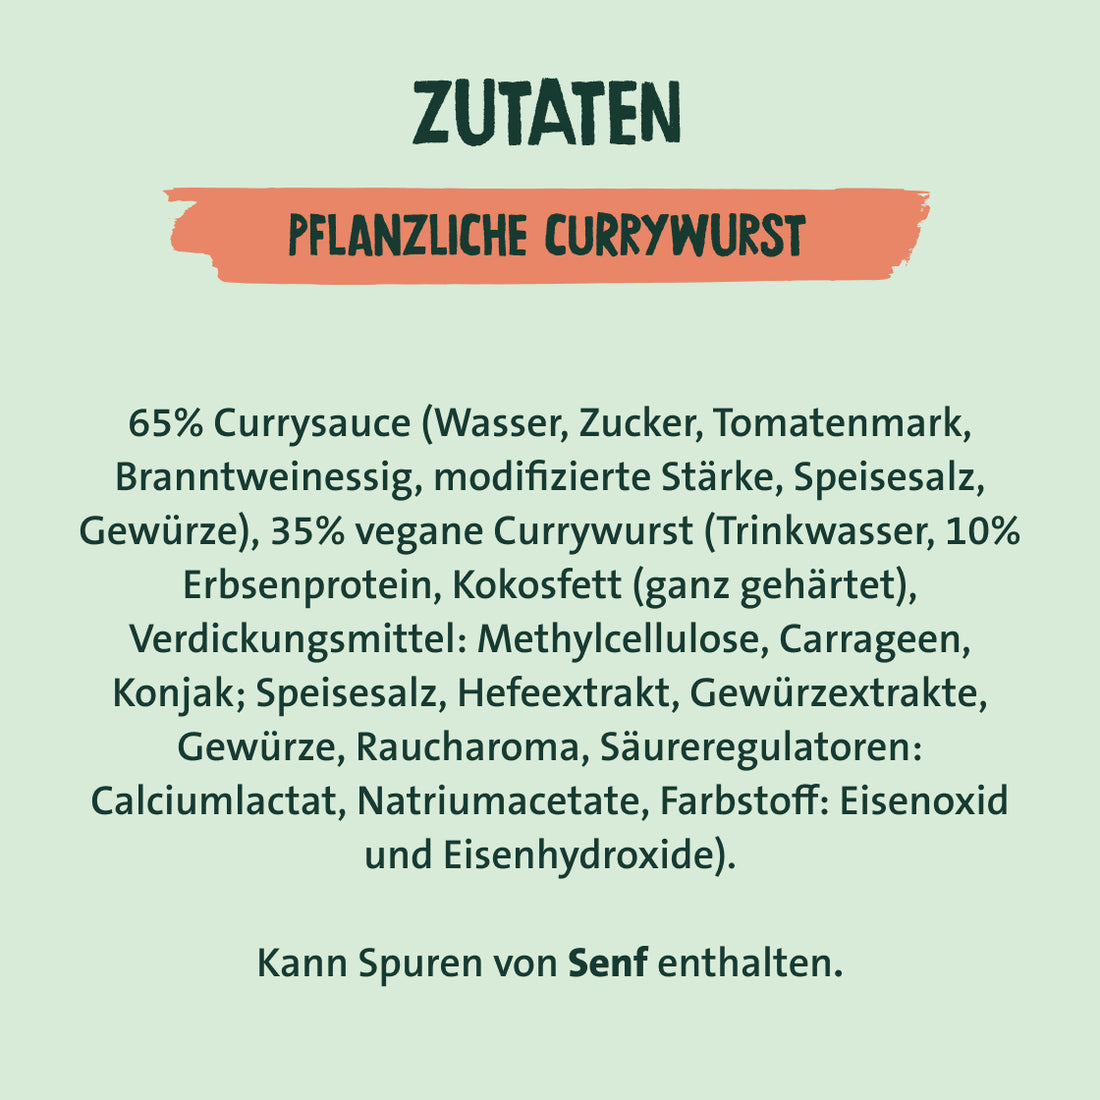 Zutaten pflanzliche Currywurst